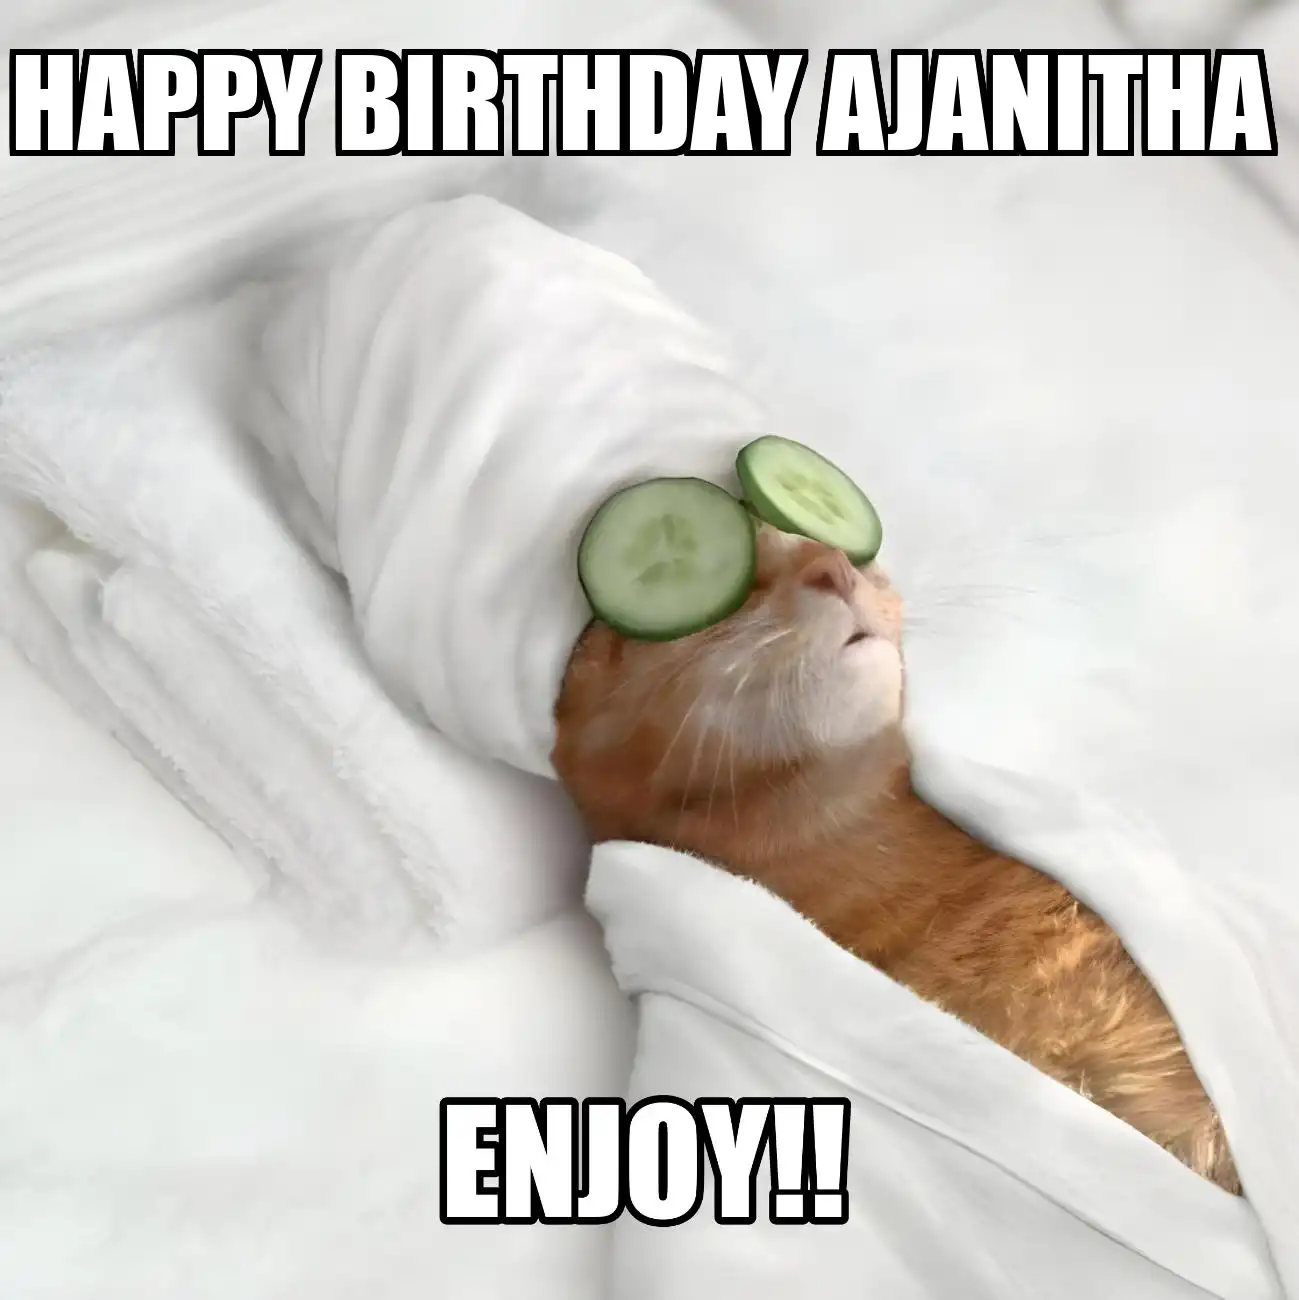 Happy Birthday Ajanitha Enjoy Cat Meme